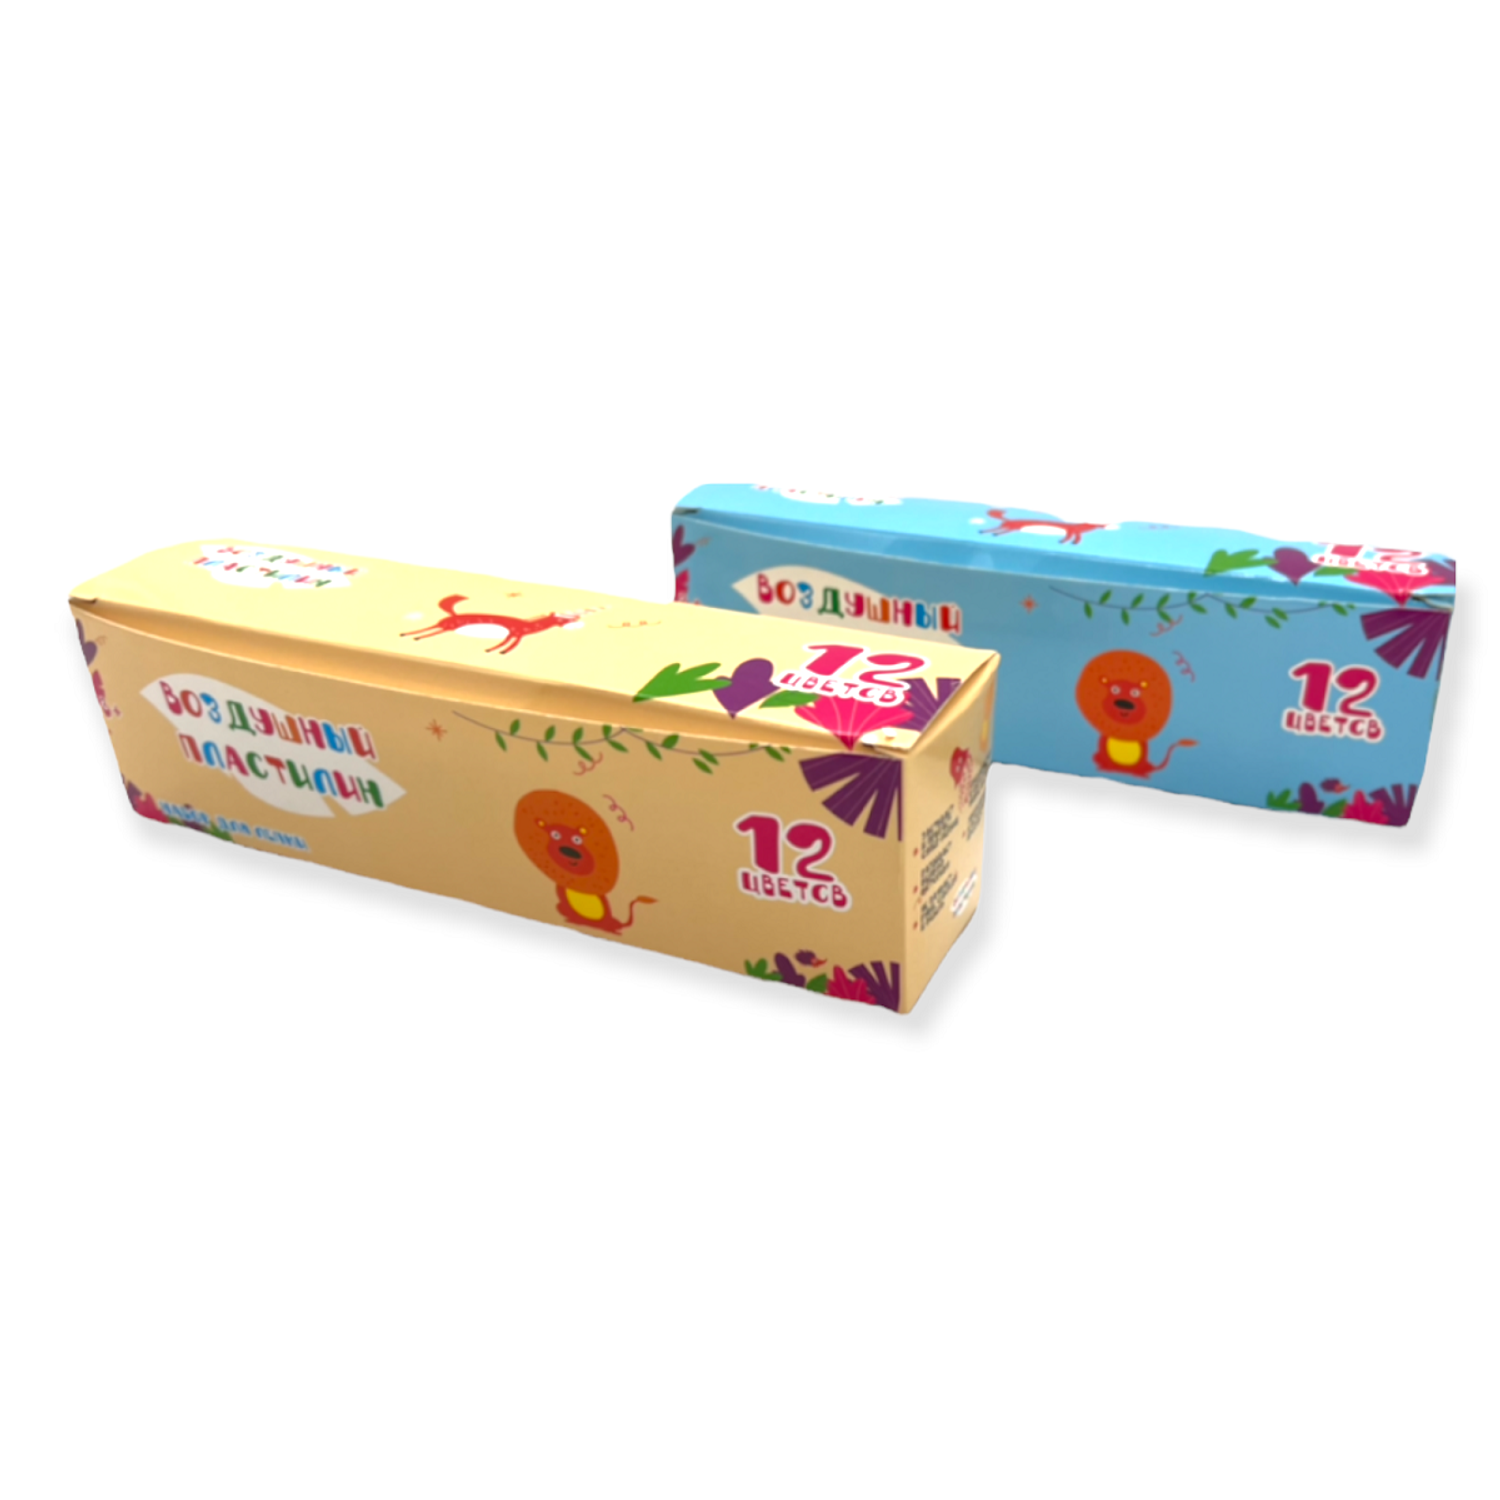 Воздушный пластилин Парам-пампам 12 цветов в подарочной упаковке с инструментами и глазками - фото 2